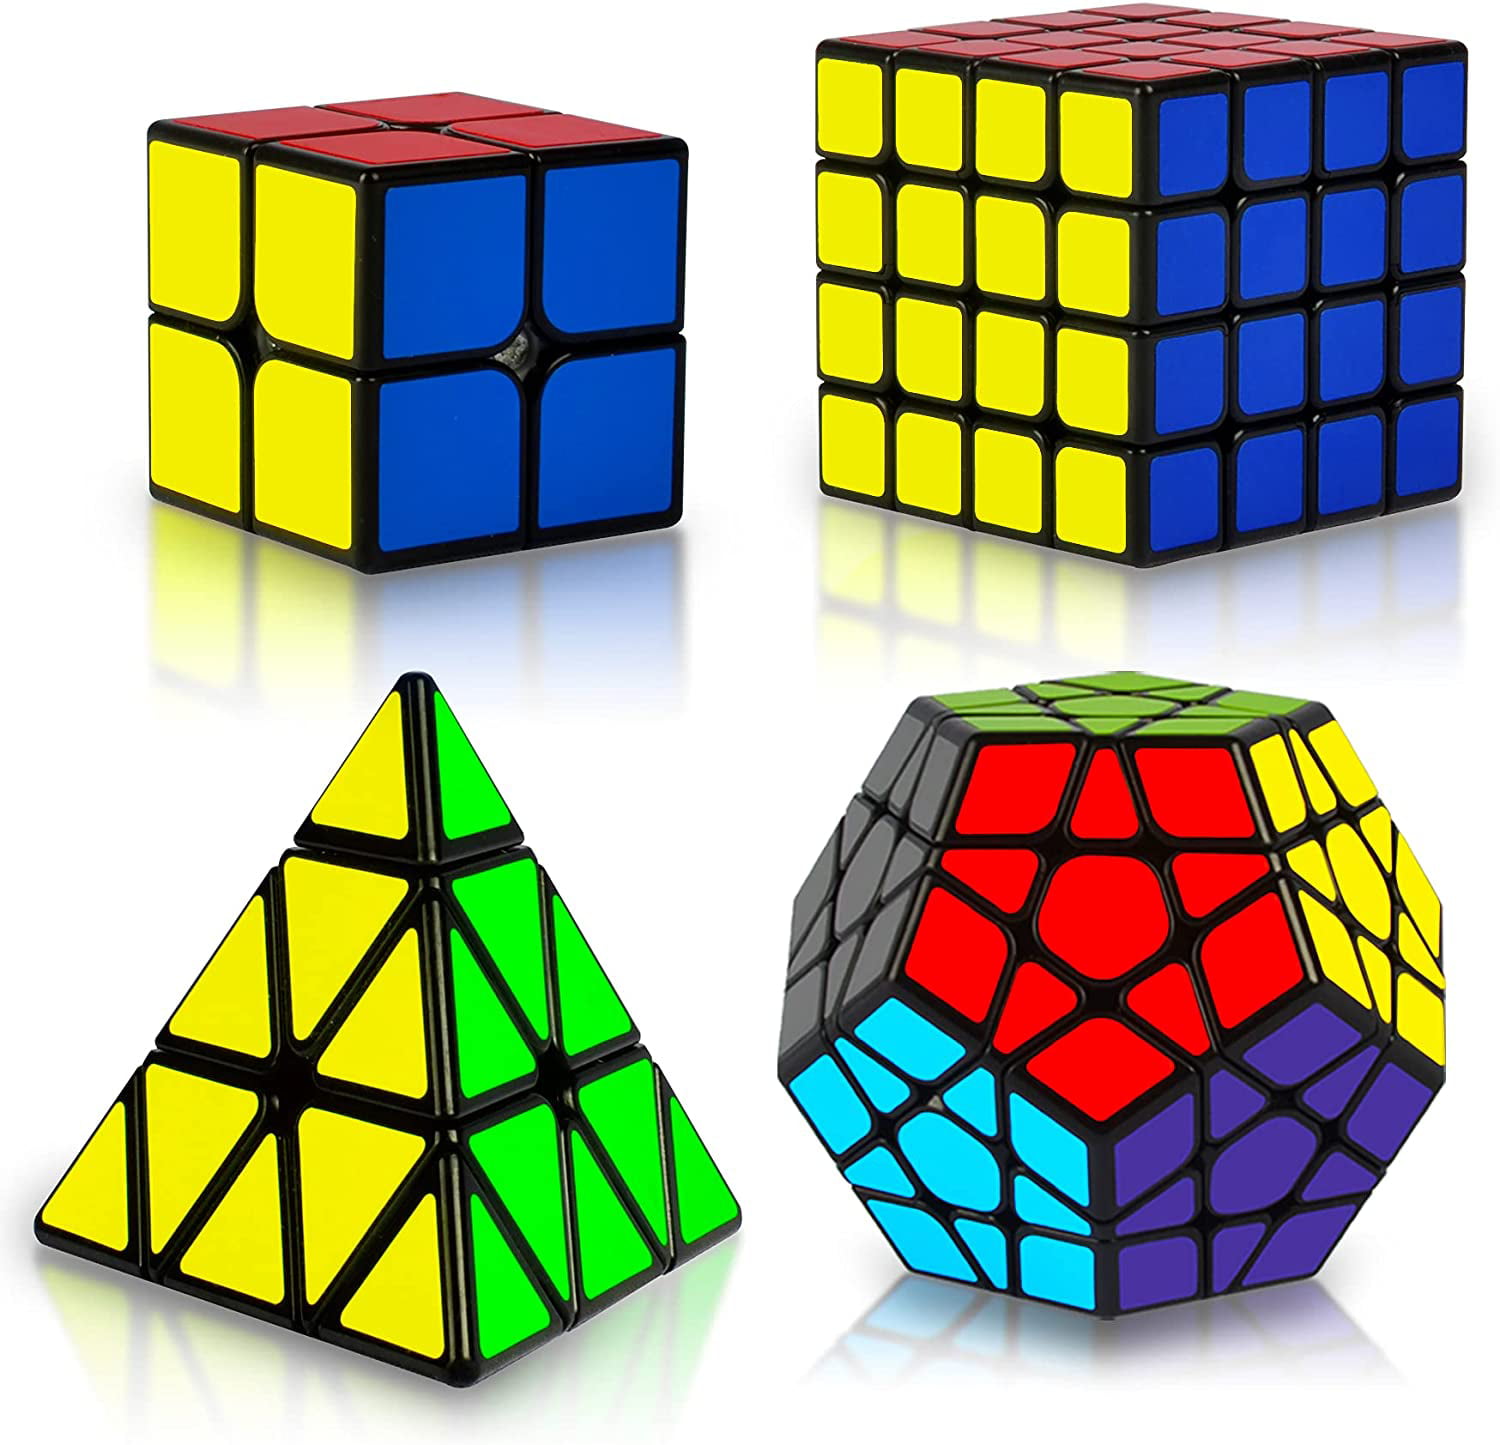 Professional Magic Cube Puzzle Toy Pyraminx for Genius Kids GIFT RARE 